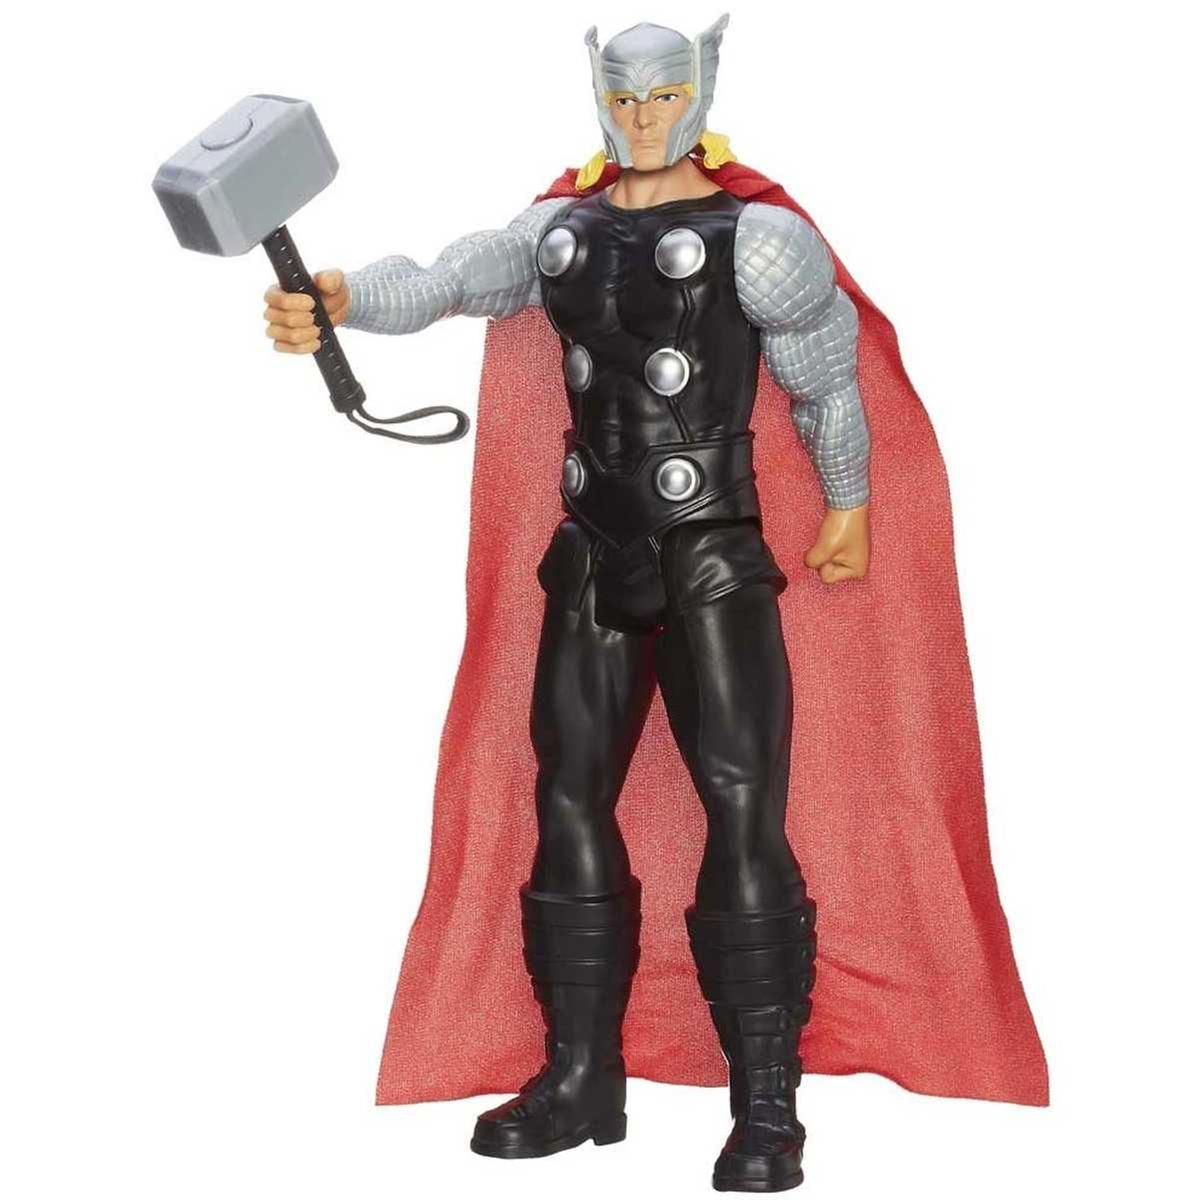 Boneco Antigo do Thor medindo 14 cm de altura